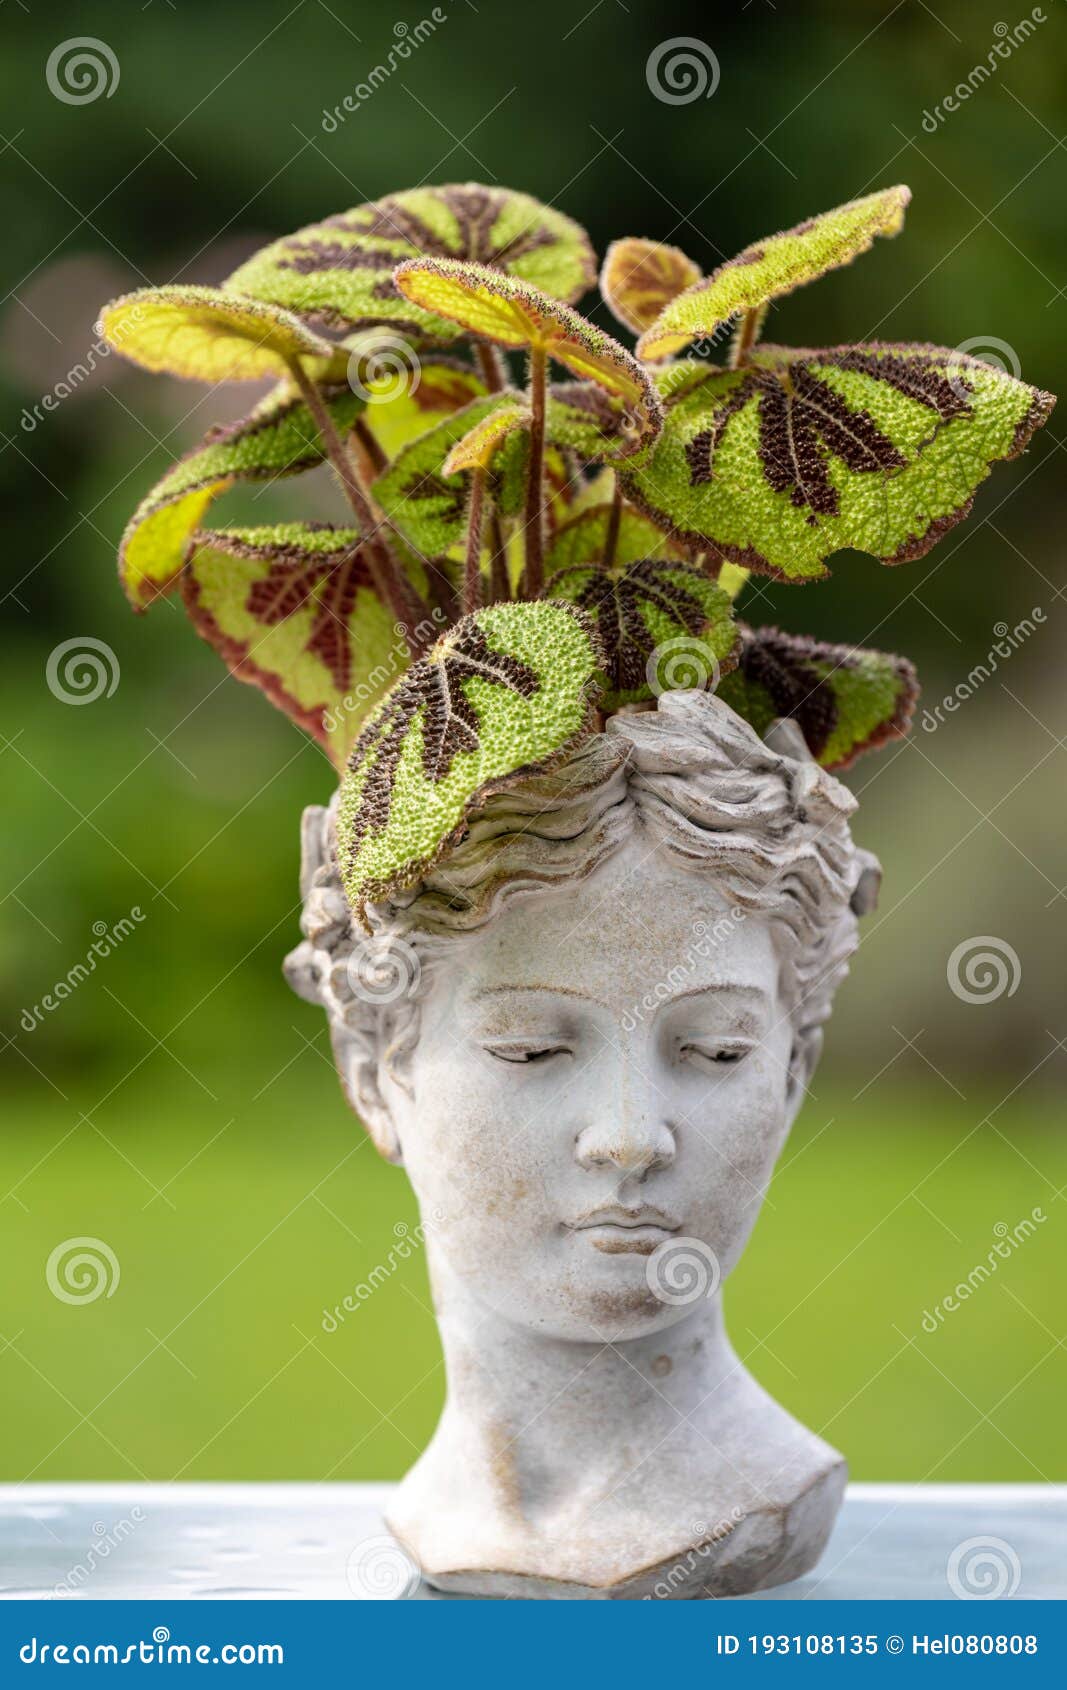 Cruz De Hierro Begonia Begonia Masoniana Exótica Planta De Selva Tropical  En La Cabeza Hembra. Busto De Cabeza De Las Mujeres Rell Imagen de archivo  - Imagen de hierro, alineada: 193108135